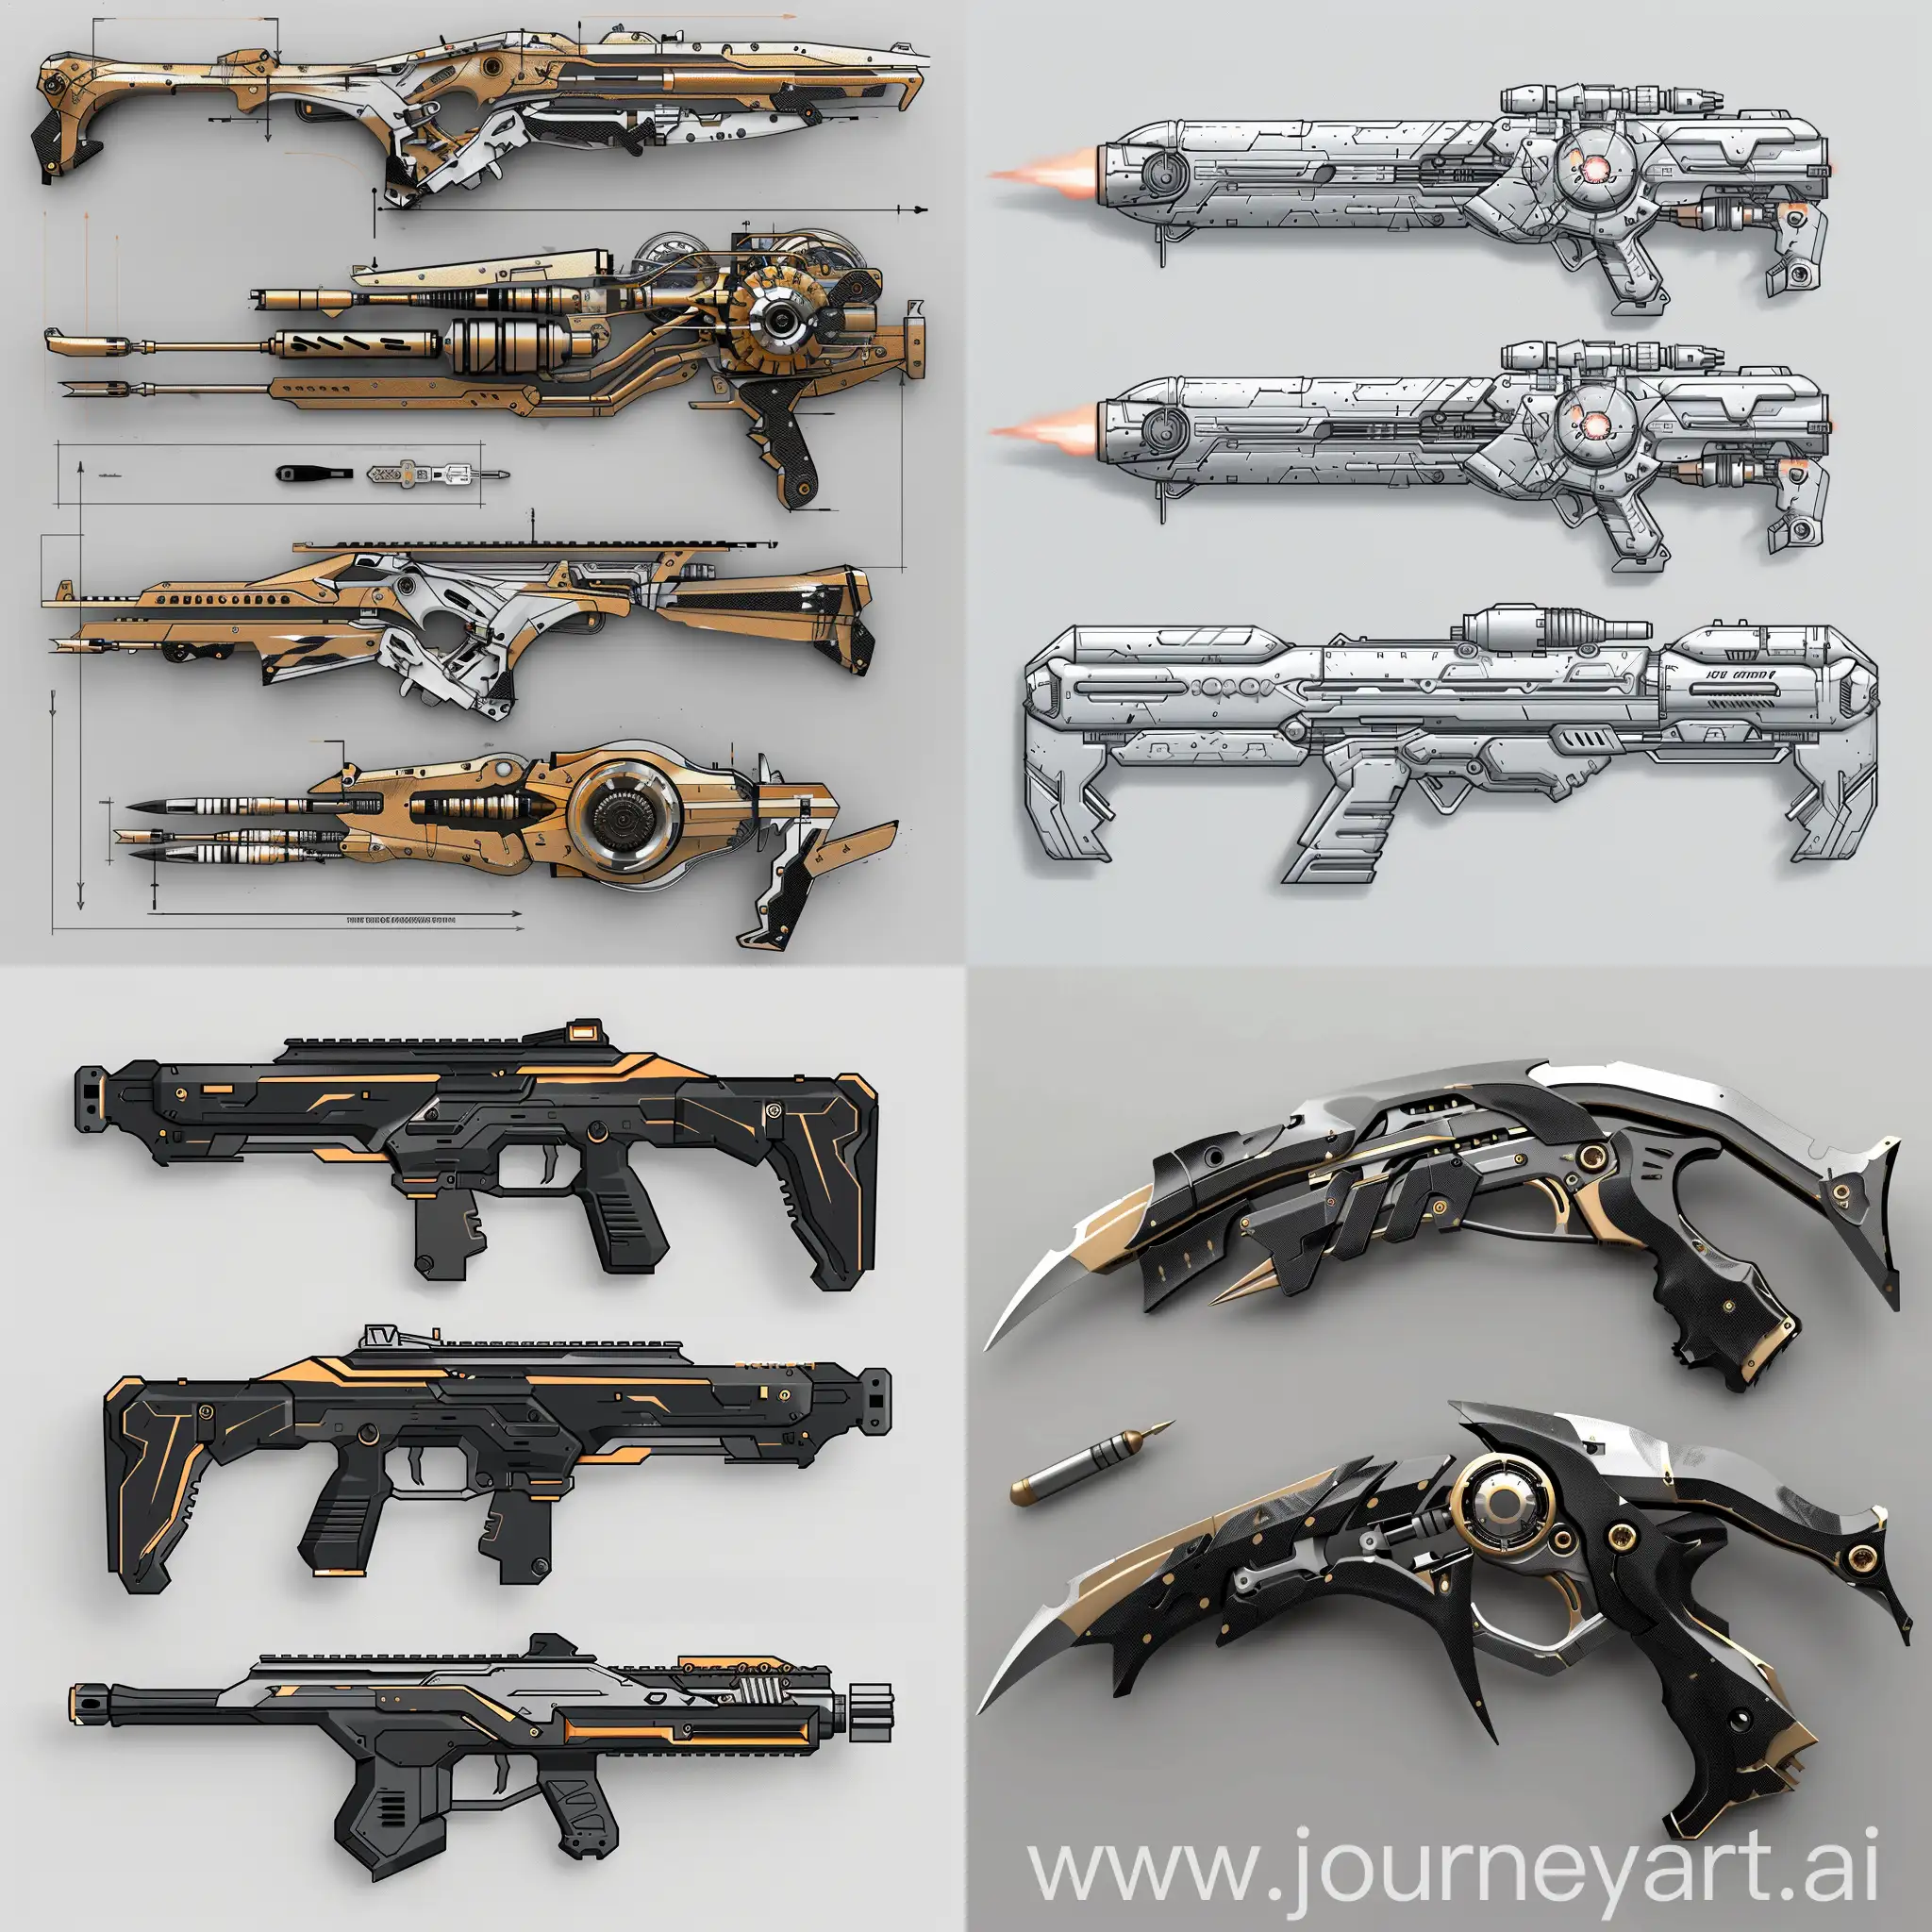 Teenage-EngineeringInspired-Weapon-Designs